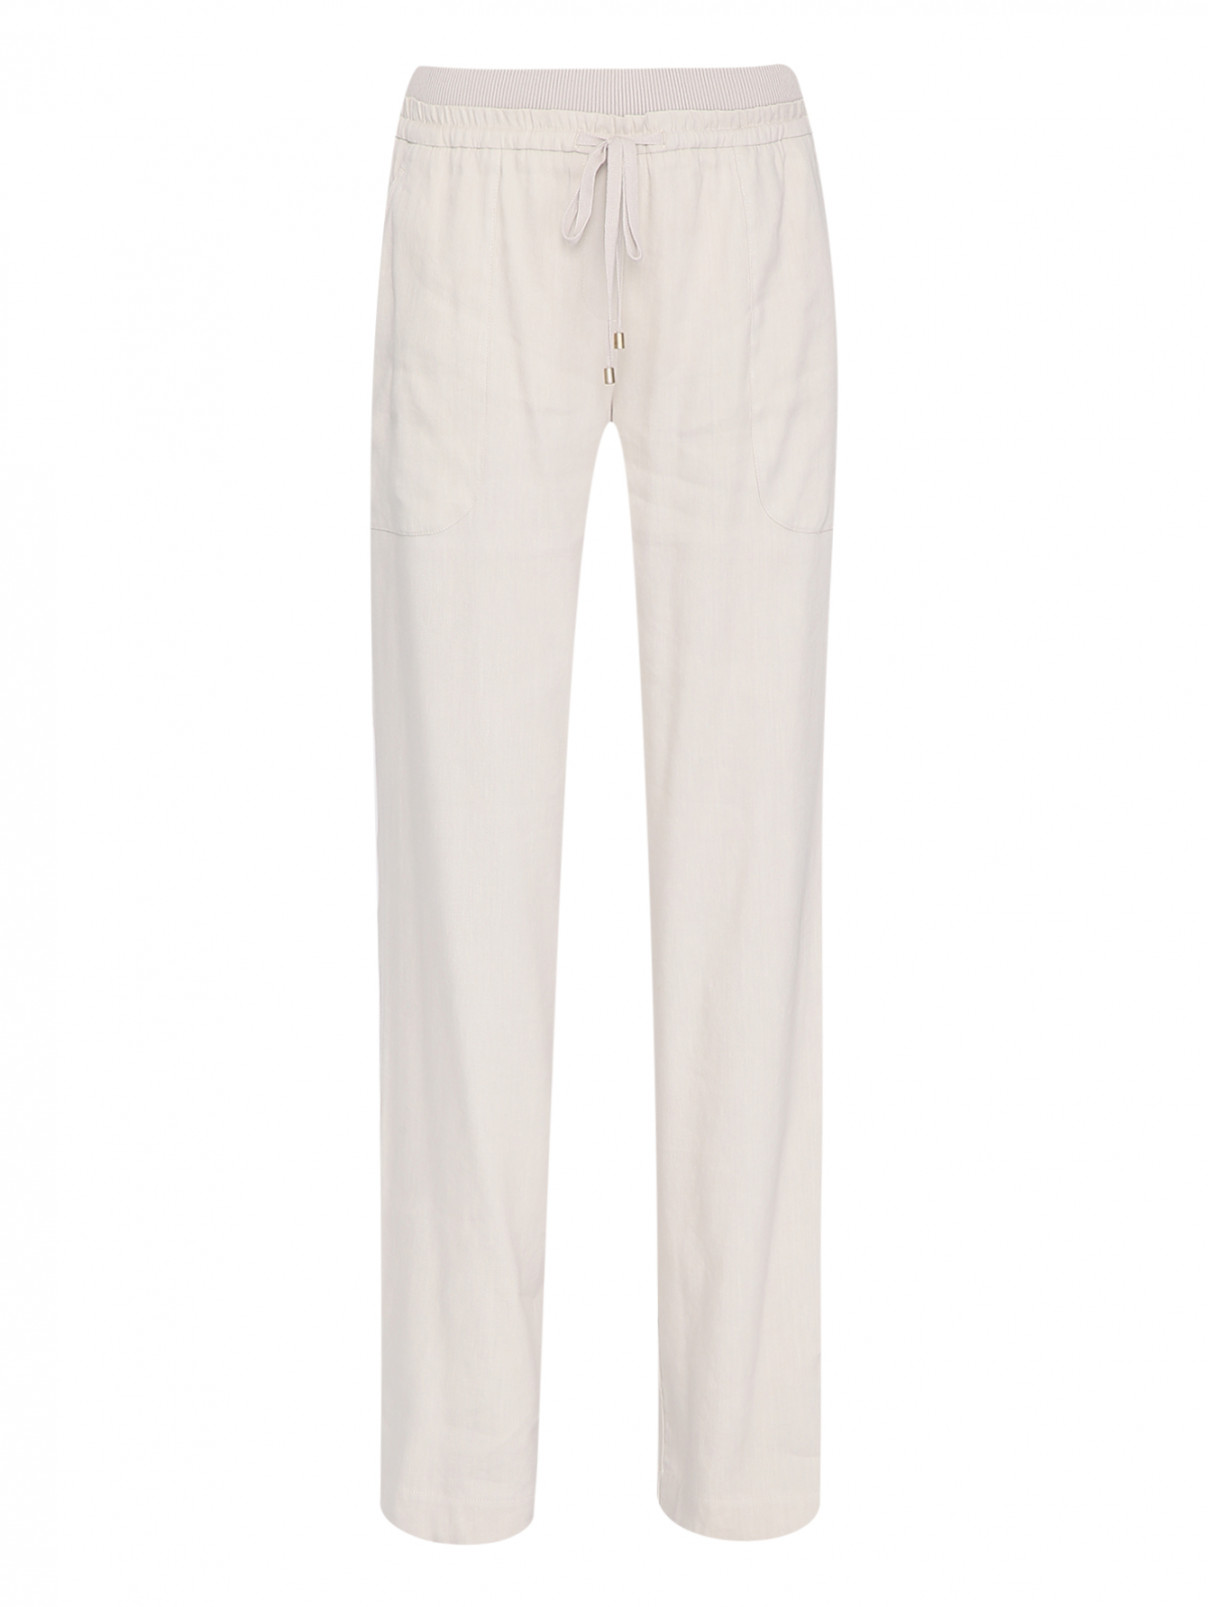 Широкие брюки на резинке Lorena Antoniazzi  –  Общий вид  – Цвет:  Бежевый